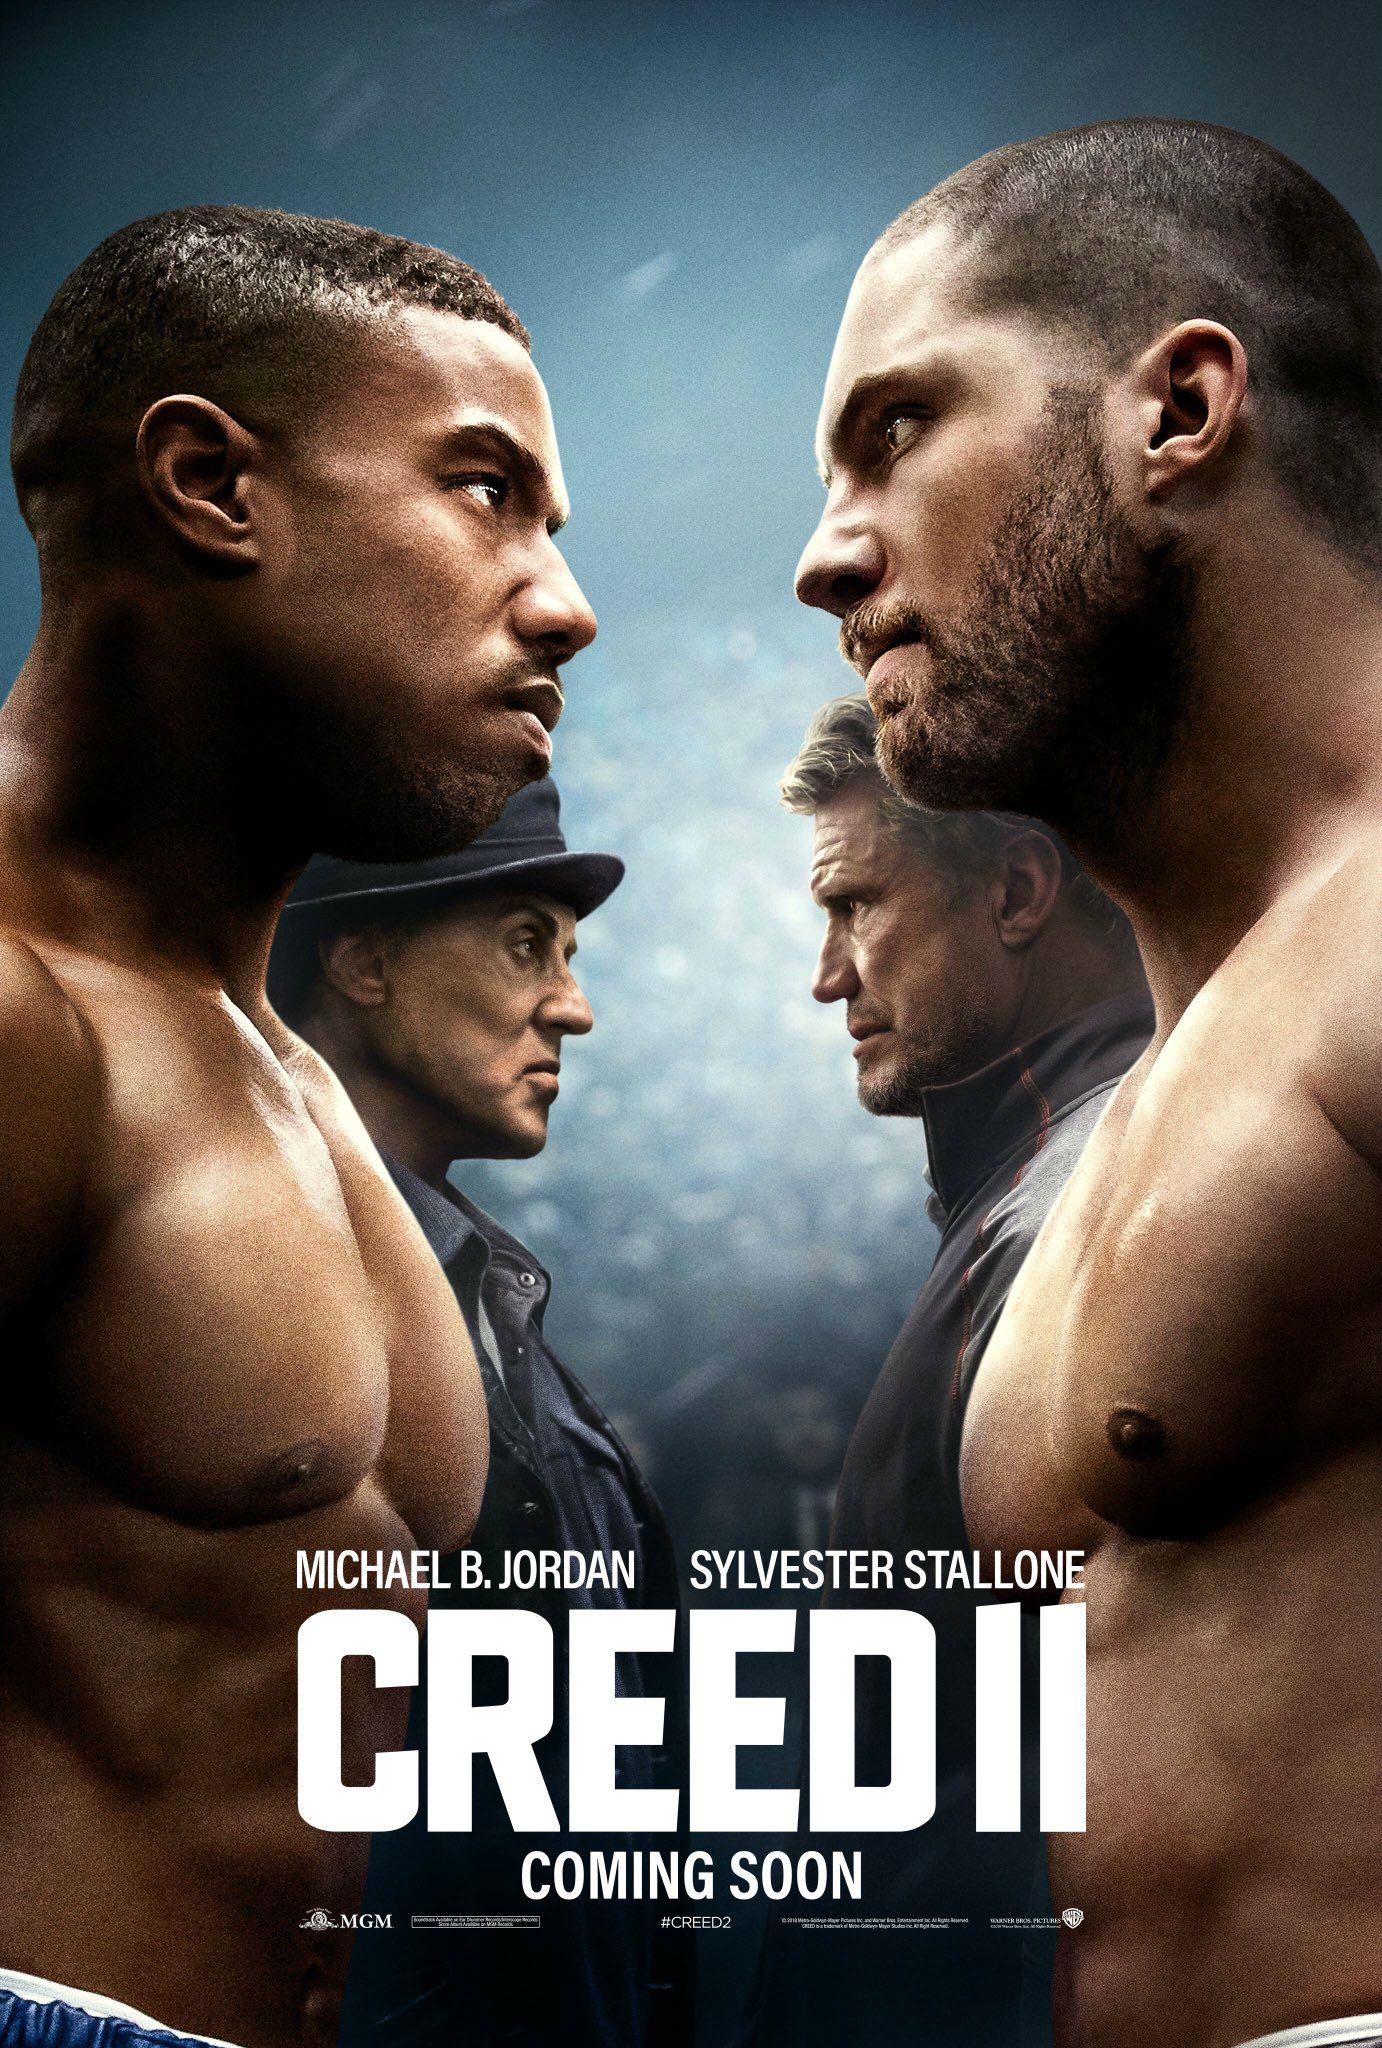 Creed 2 Poster - Creed vs Drago